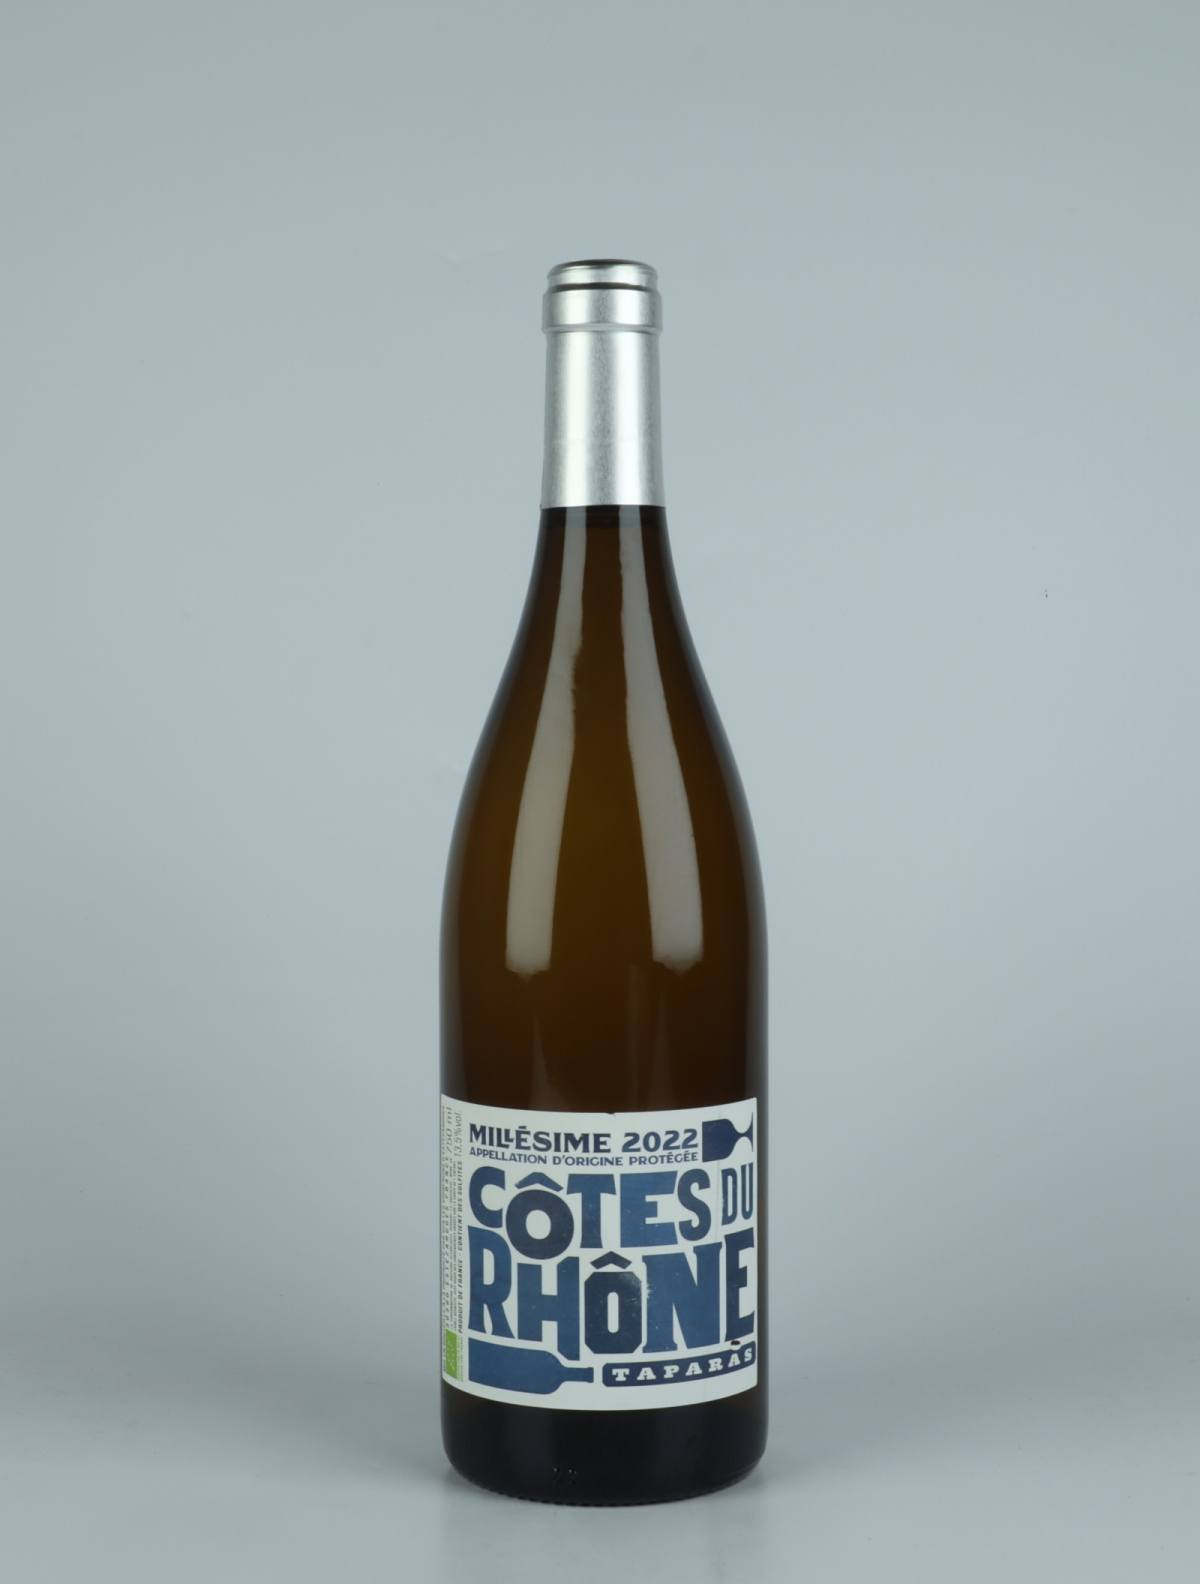 A bottle 2022 Côtes du Rhône Blanc - Taparas White wine from Les Vignerons d’Estézargues, Rhône in France